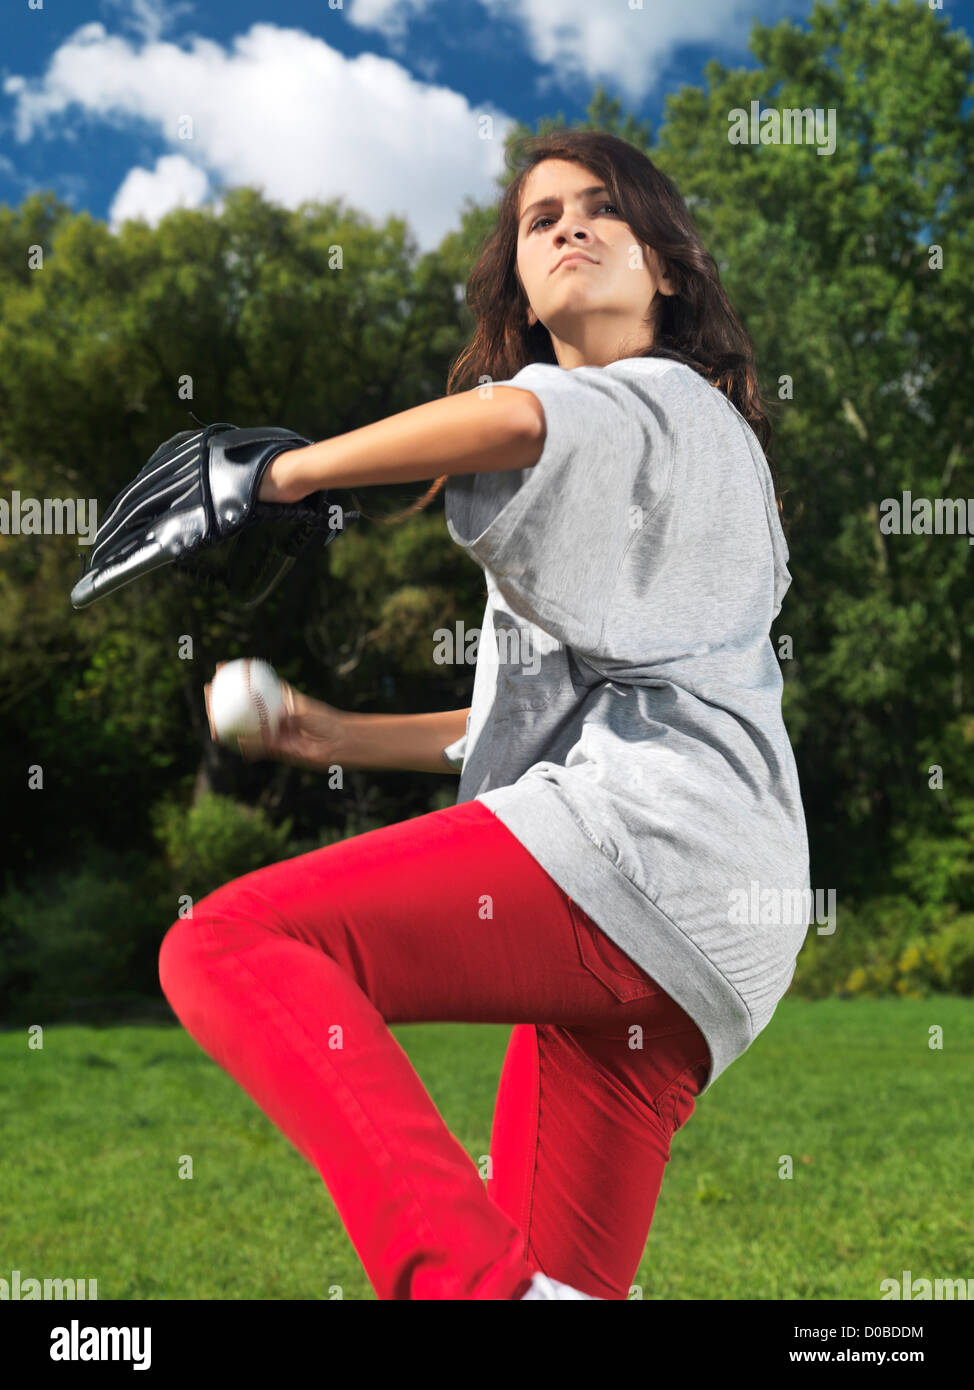 Photo d'action d'une adolescente avec un gant de baseball, throing pratiquant une balle, active summer style de vie. Banque D'Images